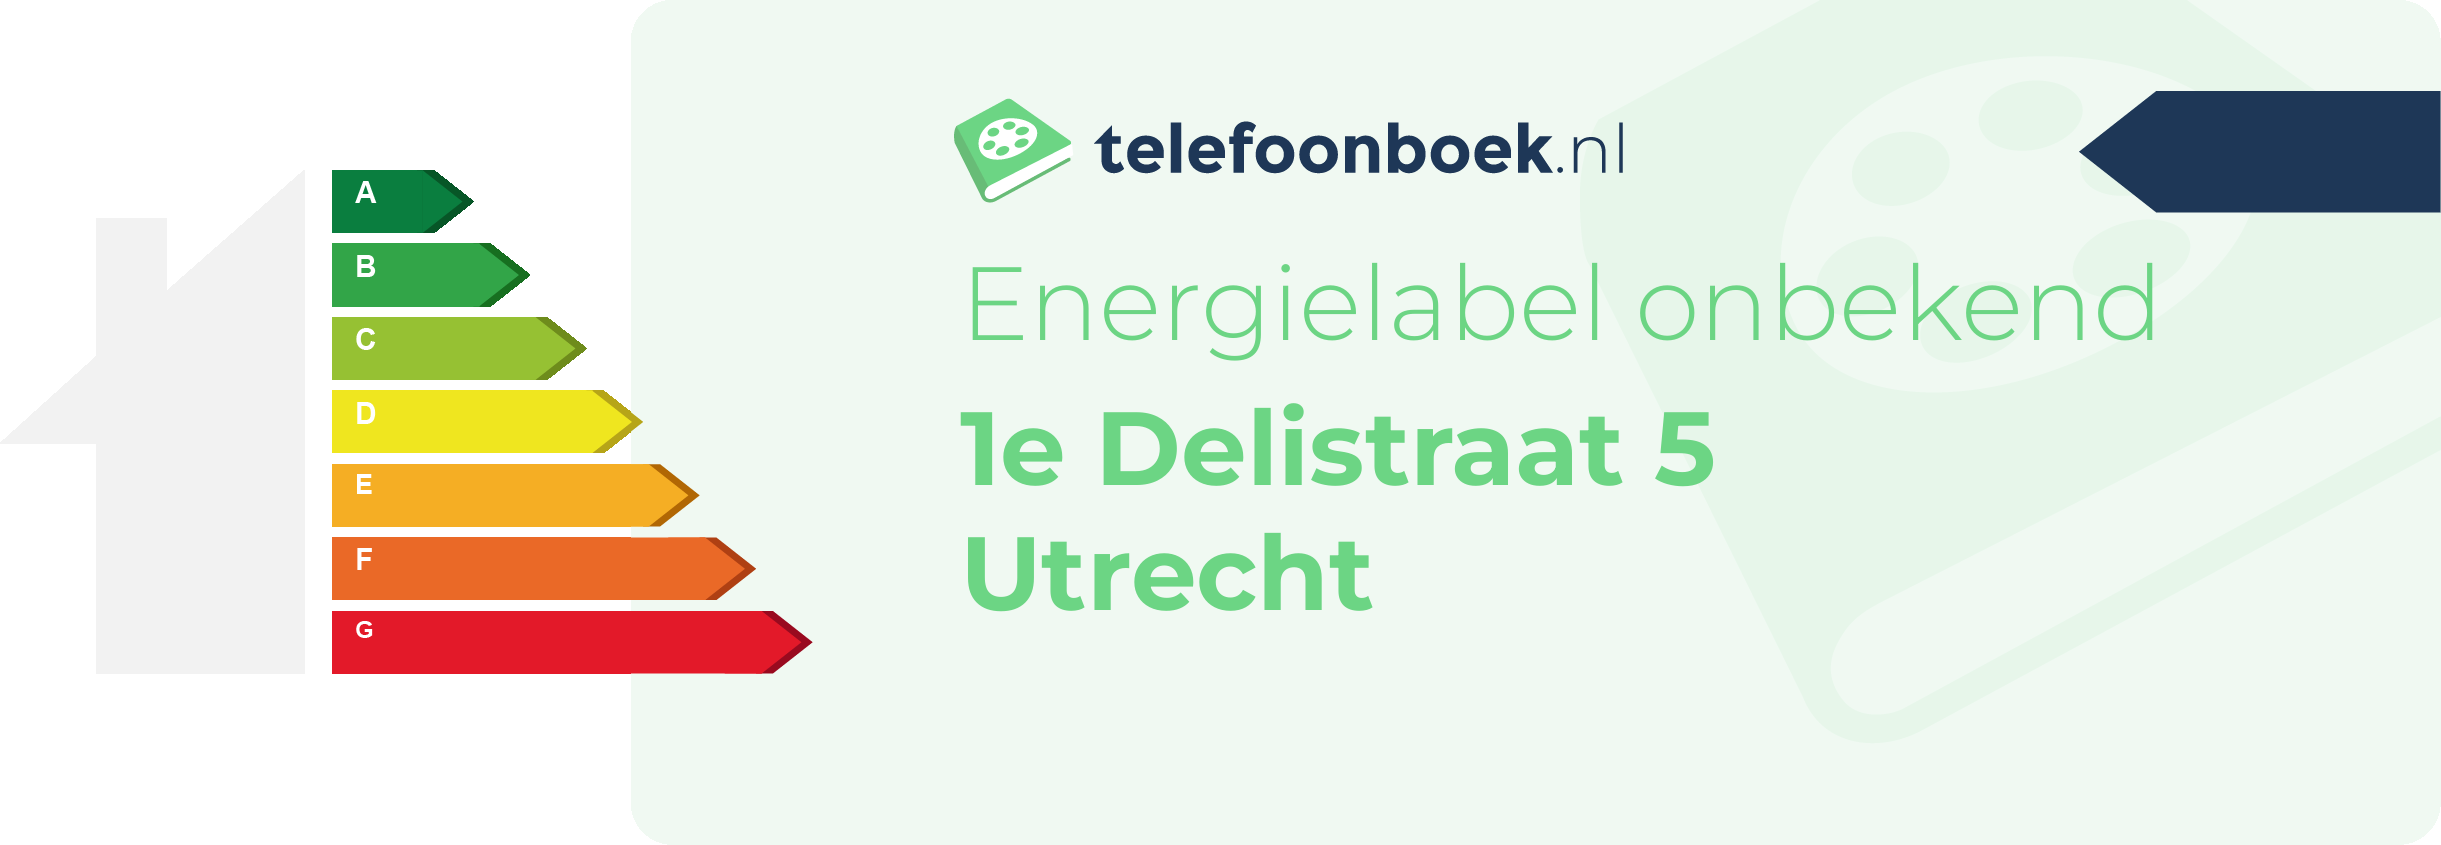 Energielabel 1e Delistraat 5 Utrecht